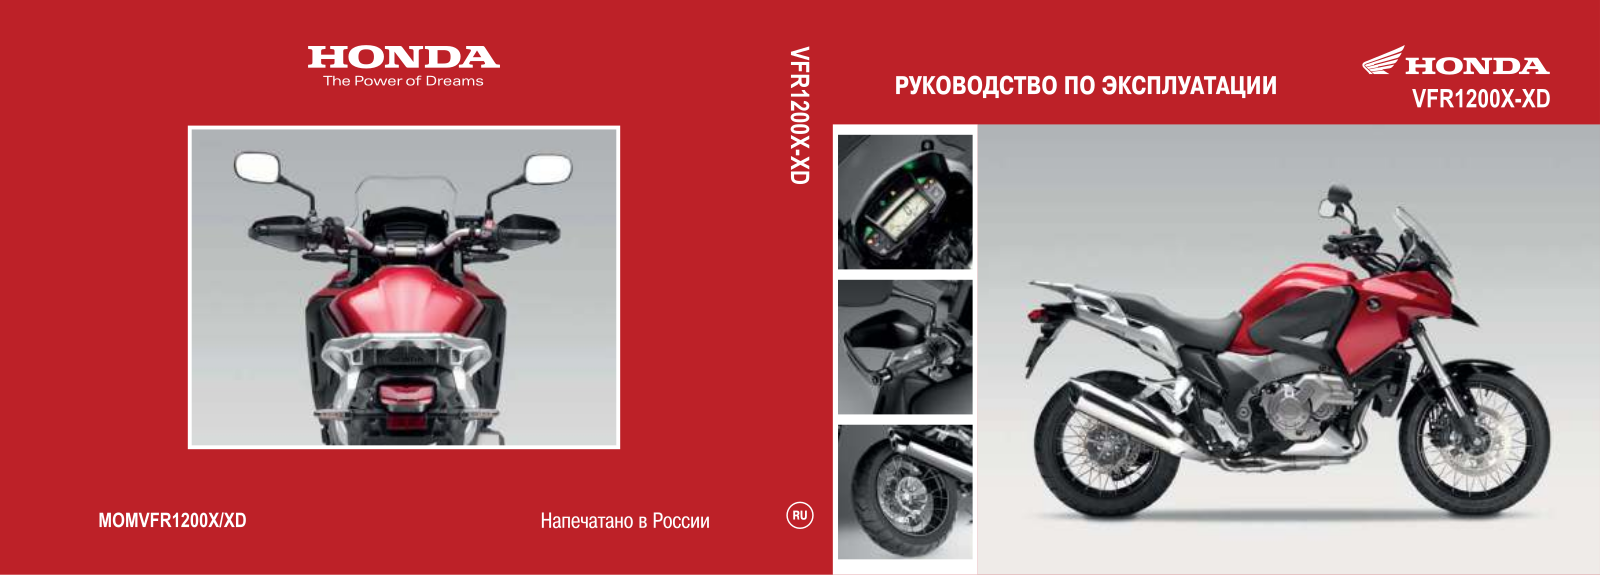 Honda VFR1200X (2011), VFR1200XD (2011) User Manual